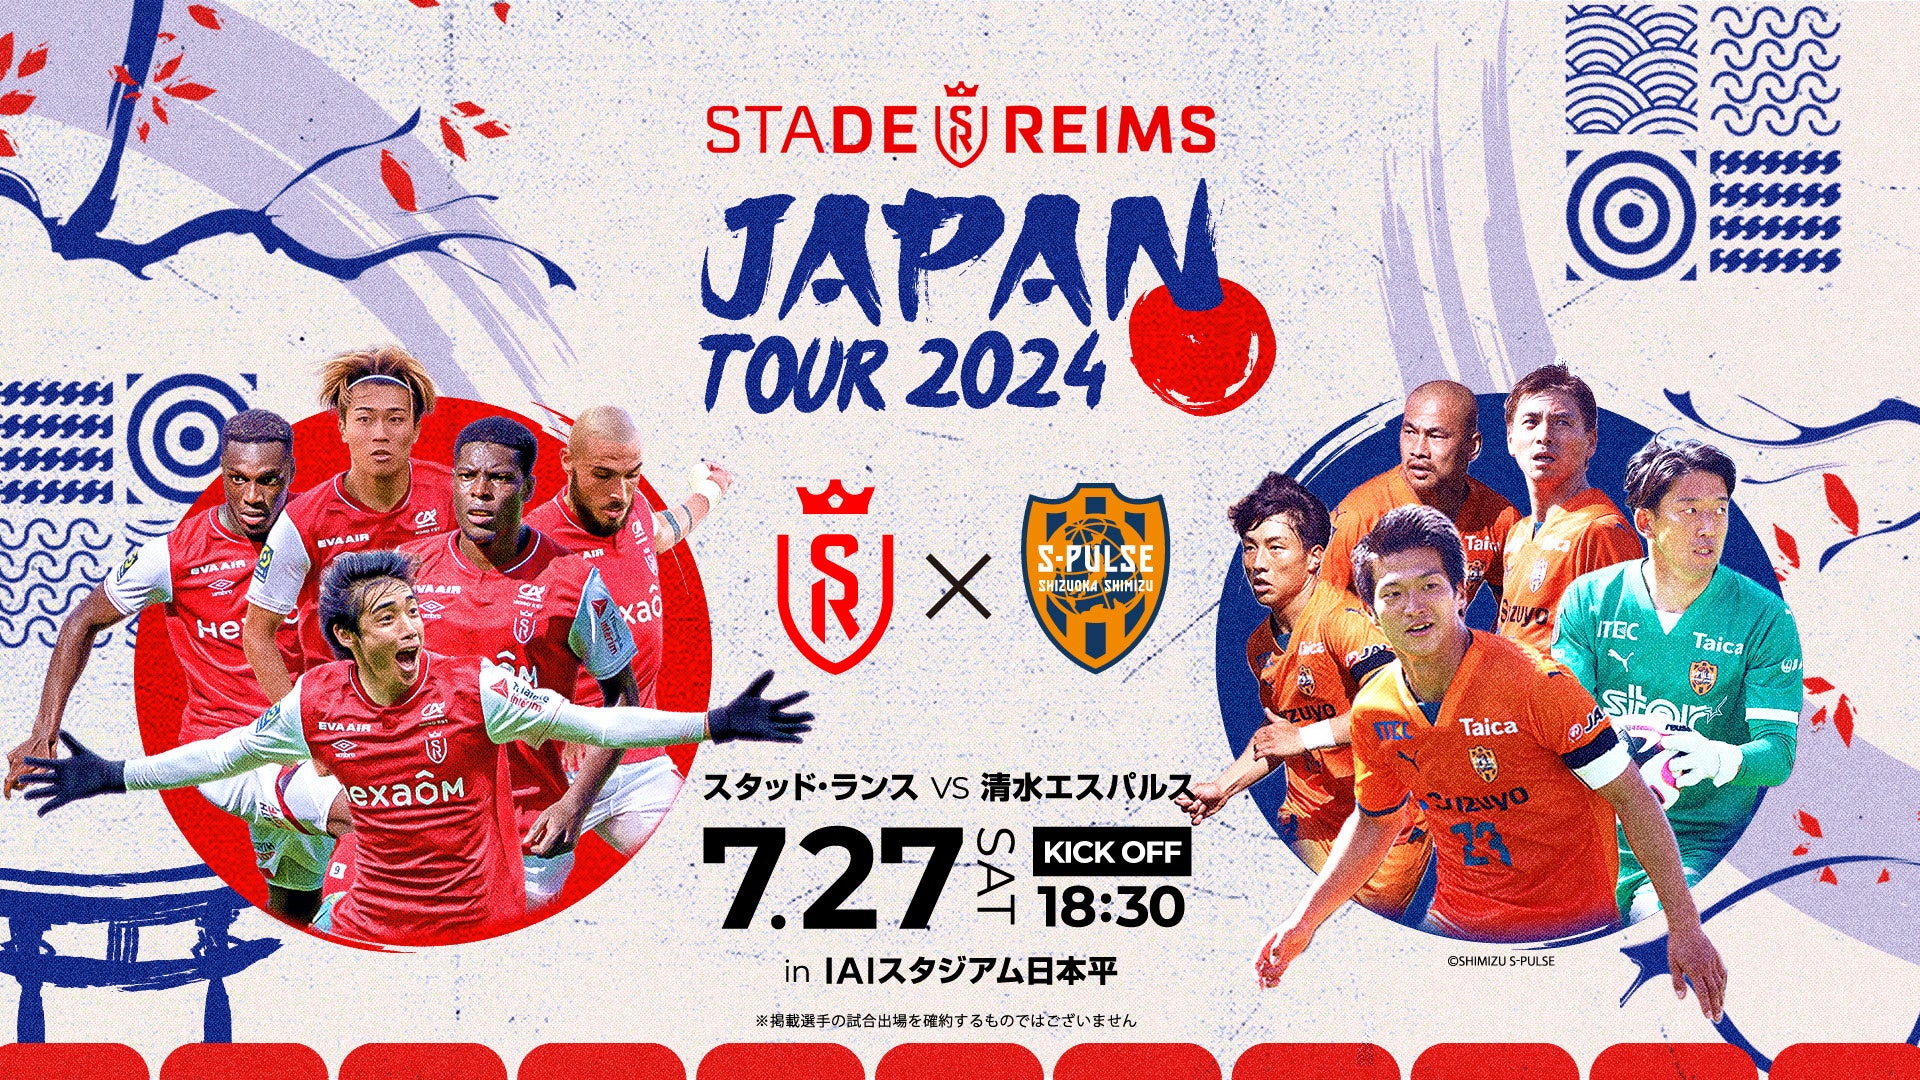 【第4弾発表】「スタッド・ランス JAPAN TOUR 2024」7月31日(水)にＦＣ町田ゼルビアとの対戦が決定！